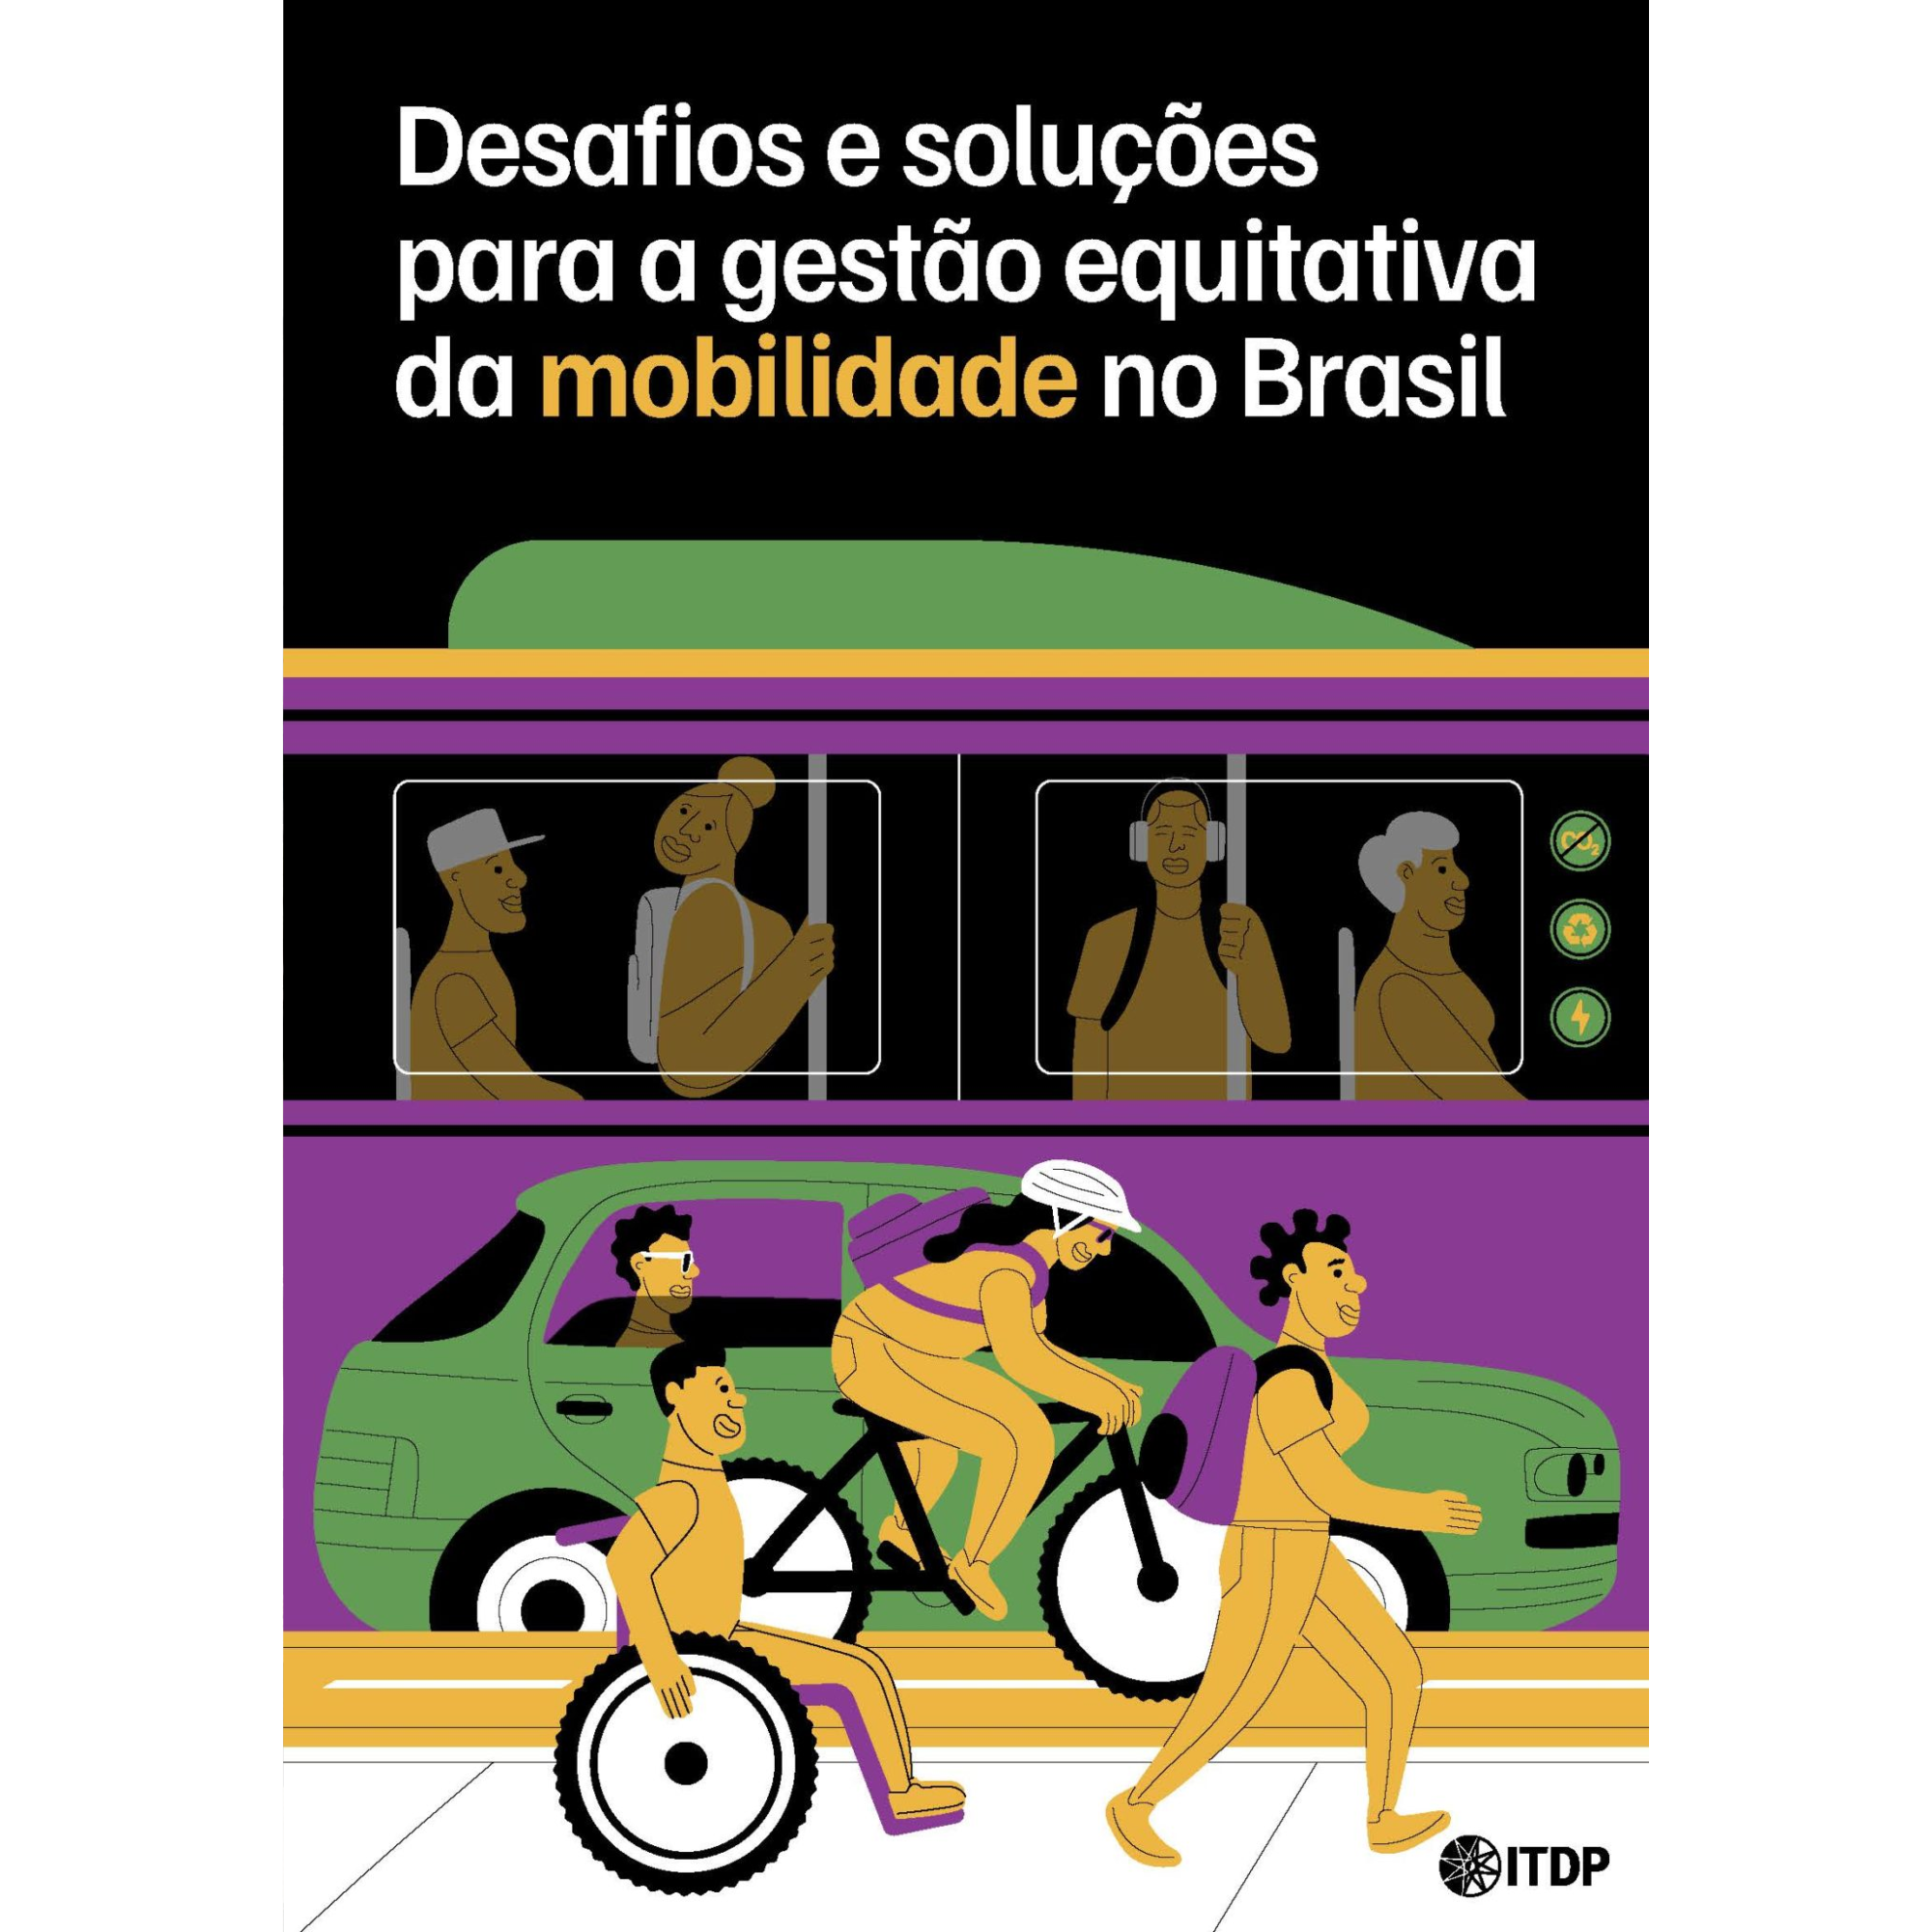 Desafios e soluções para a gestão equitativa da mobilidade no Brasil